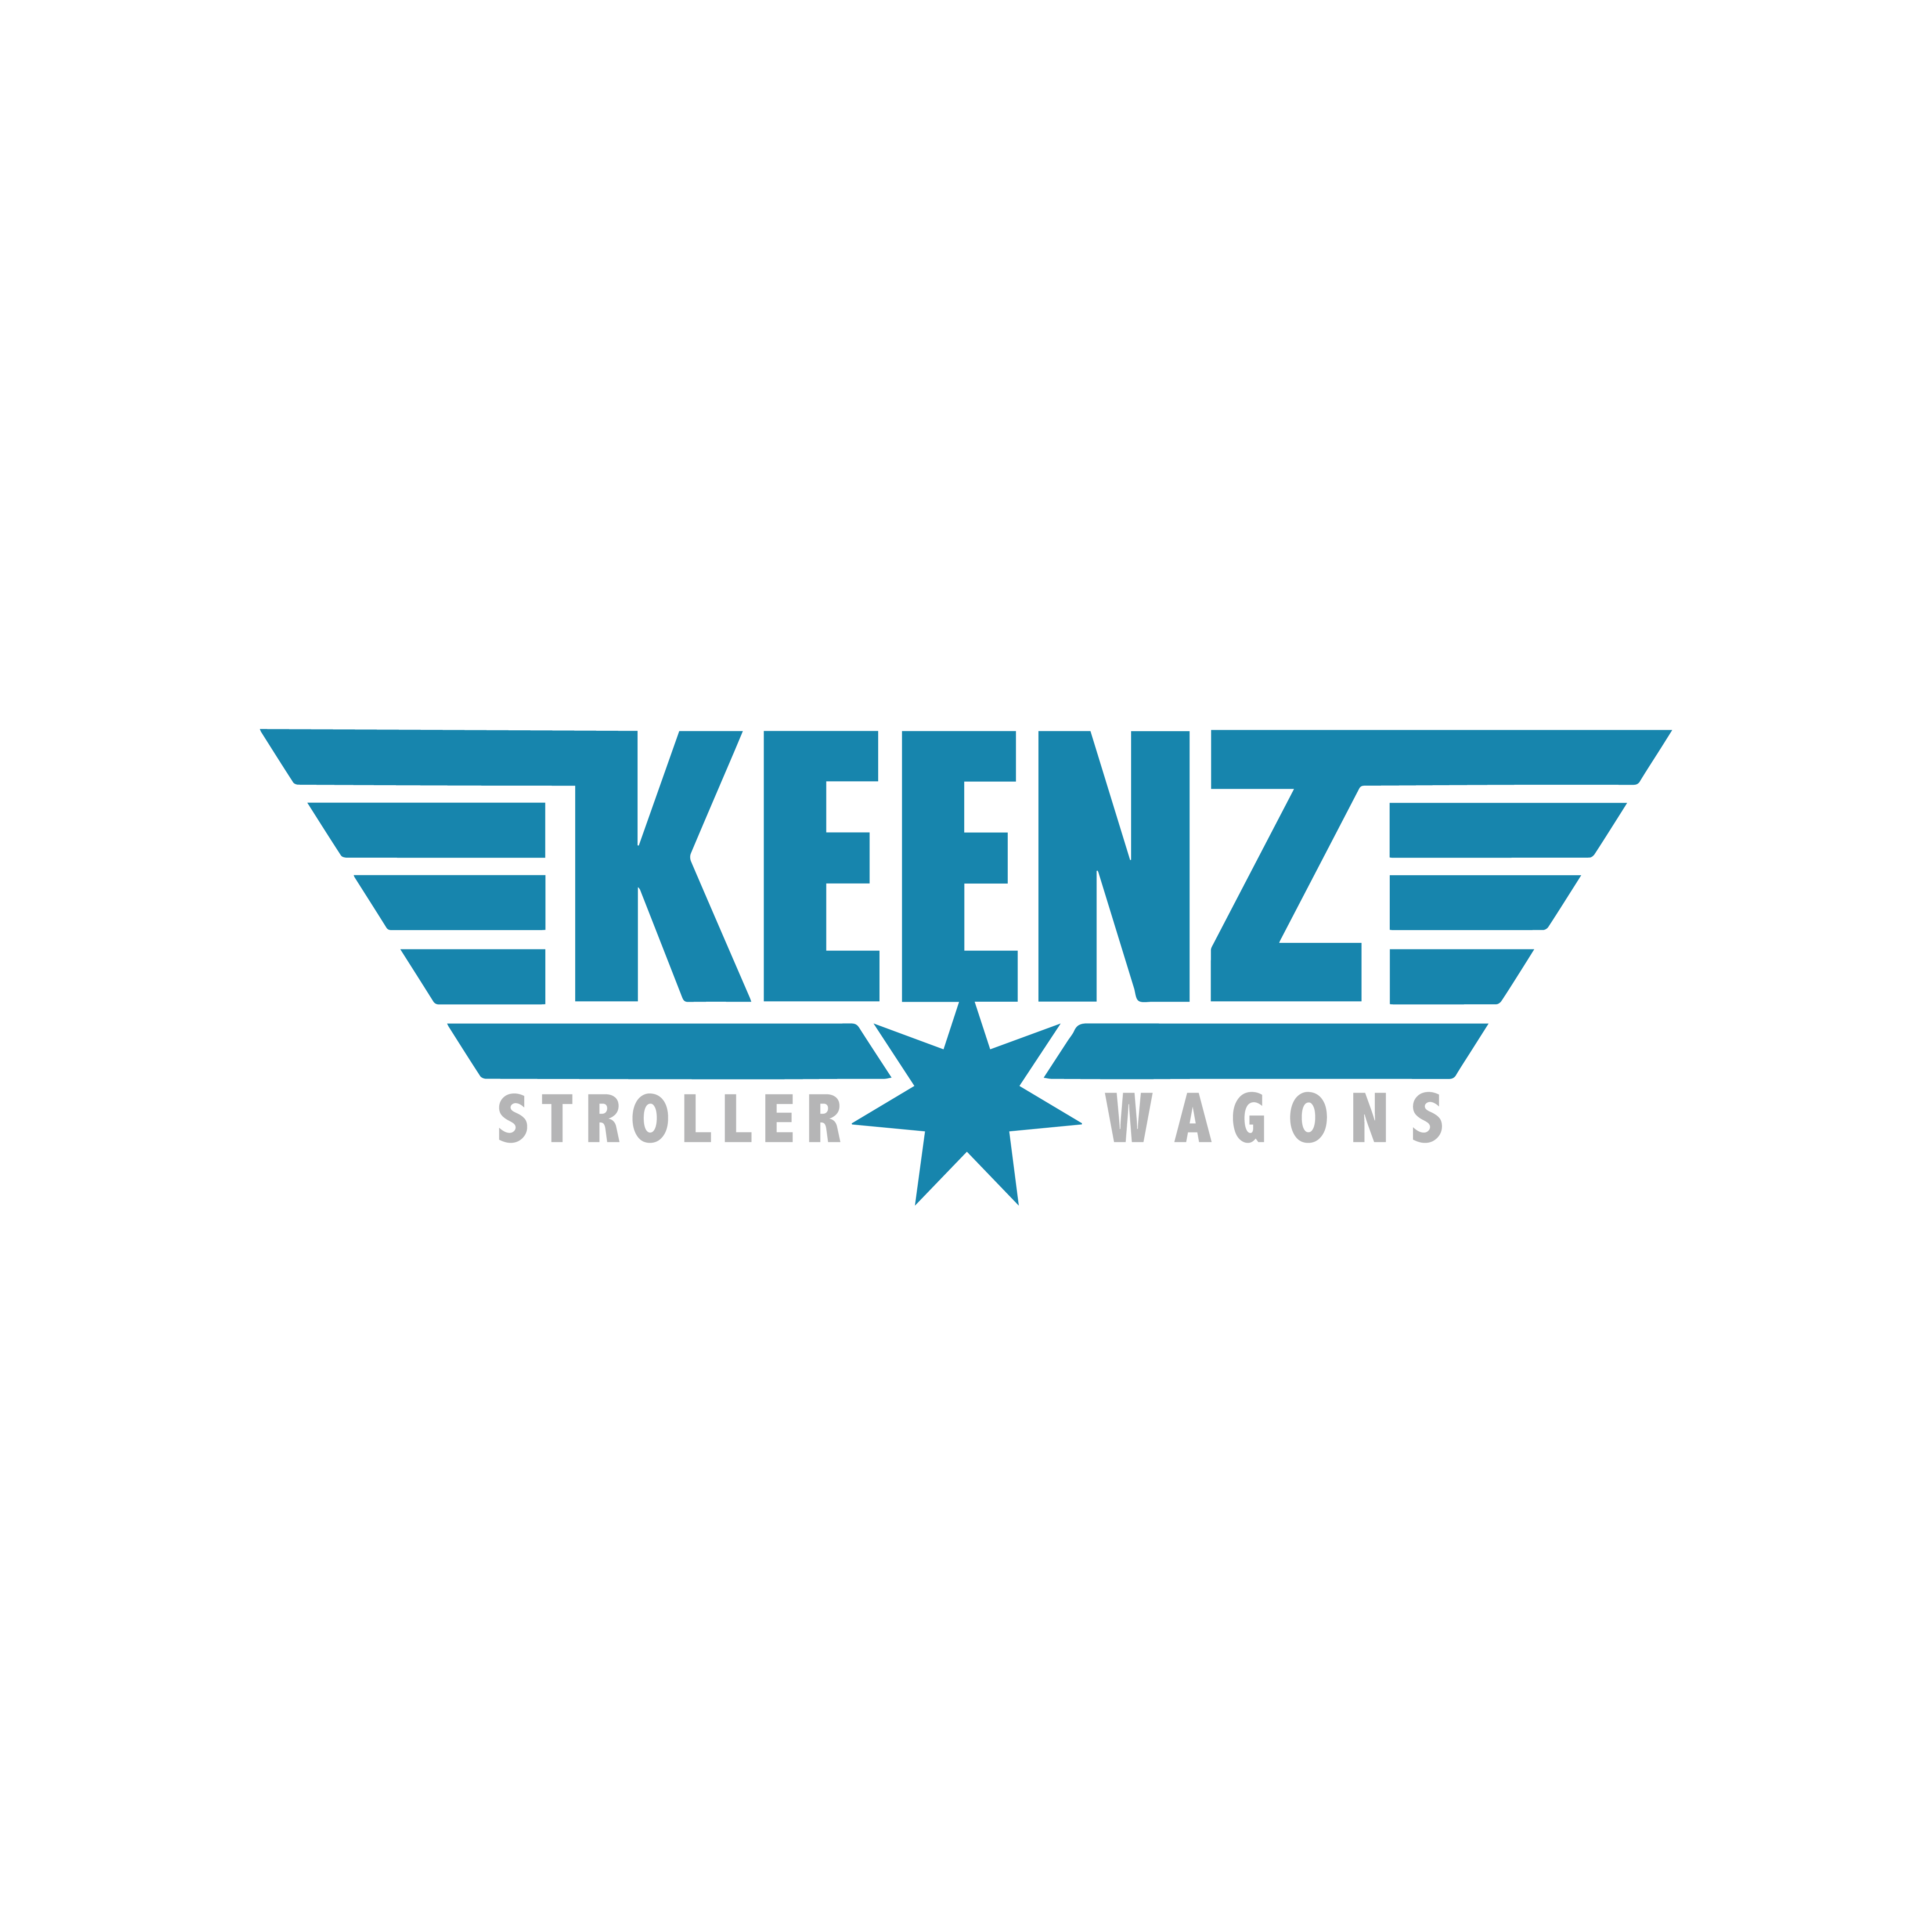 Keenz-Logo-01